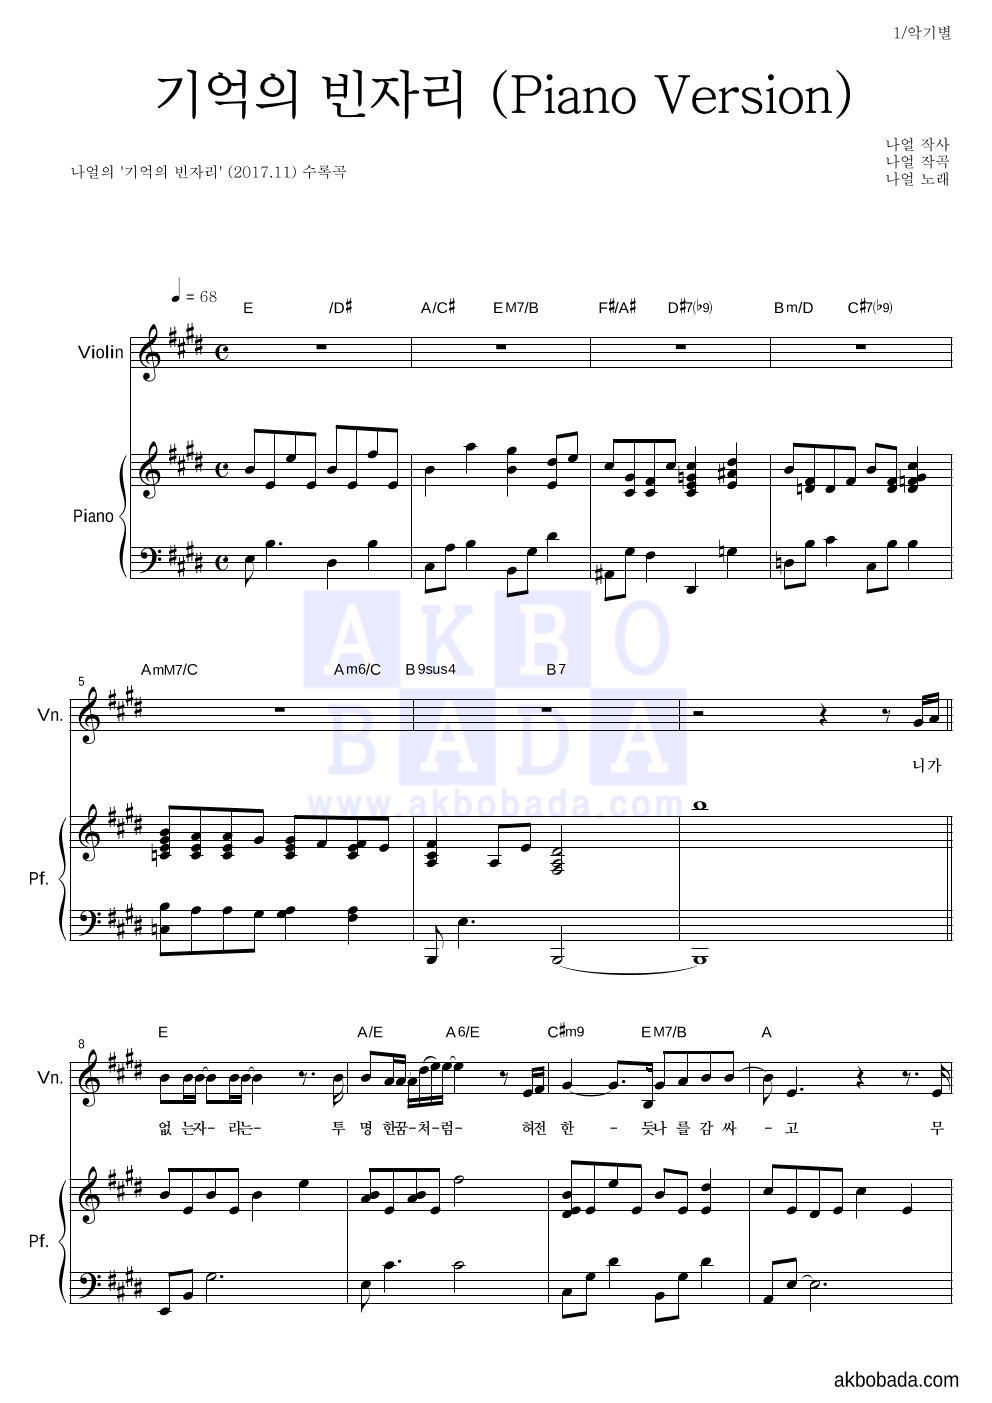 나얼 - 기억의 빈자리 (Piano Version) 바이올린&피아노 악보 